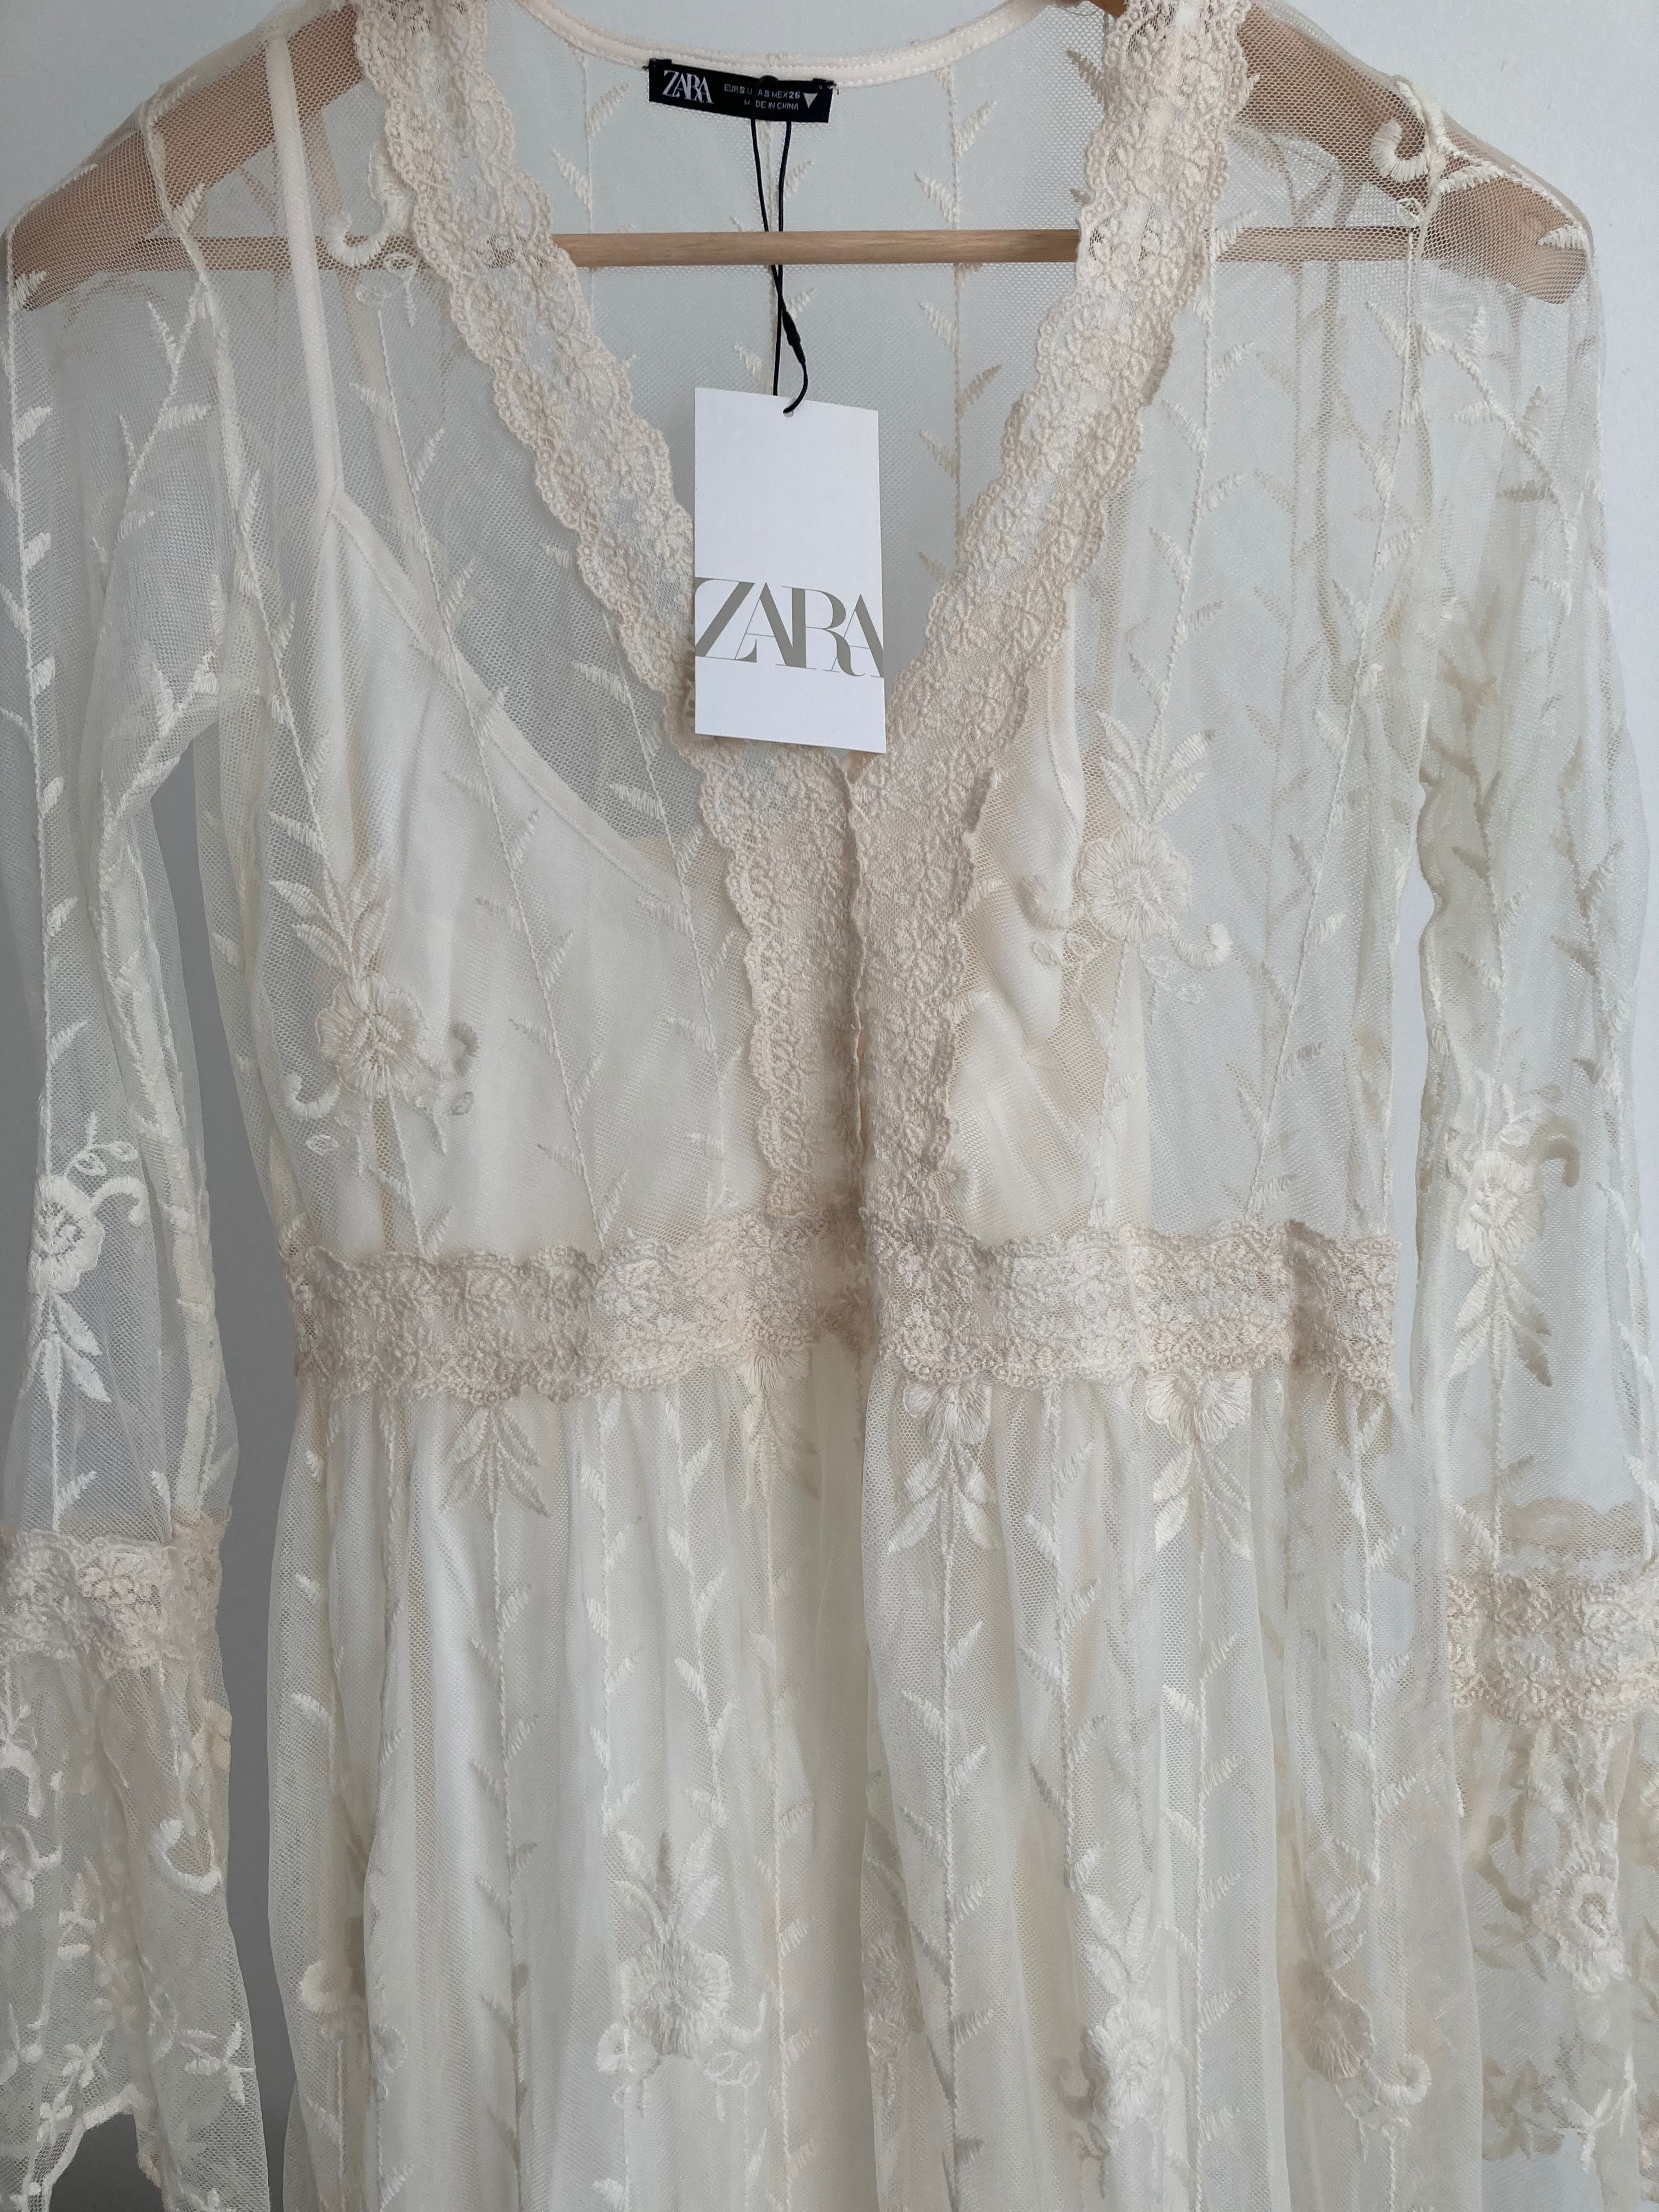 Ślubna suknia boho rustykalny styl Zara nowa koronka 36 S